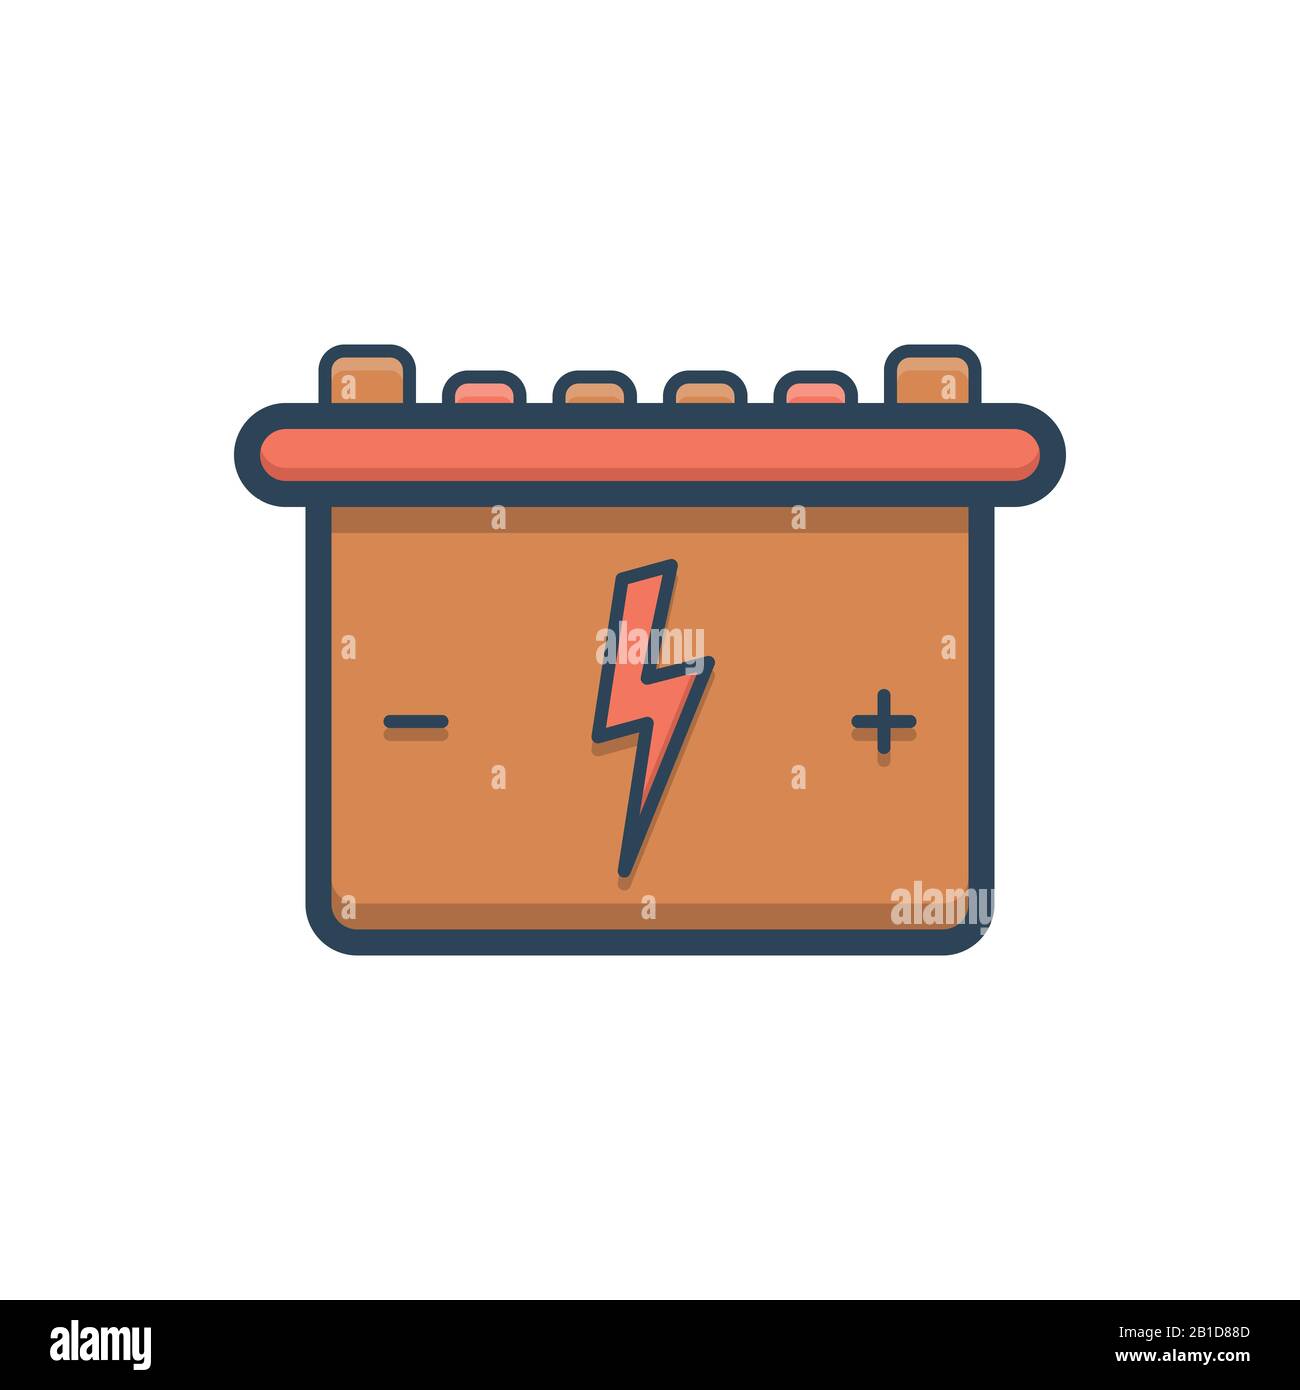 Illustration for Battery Stock Vector